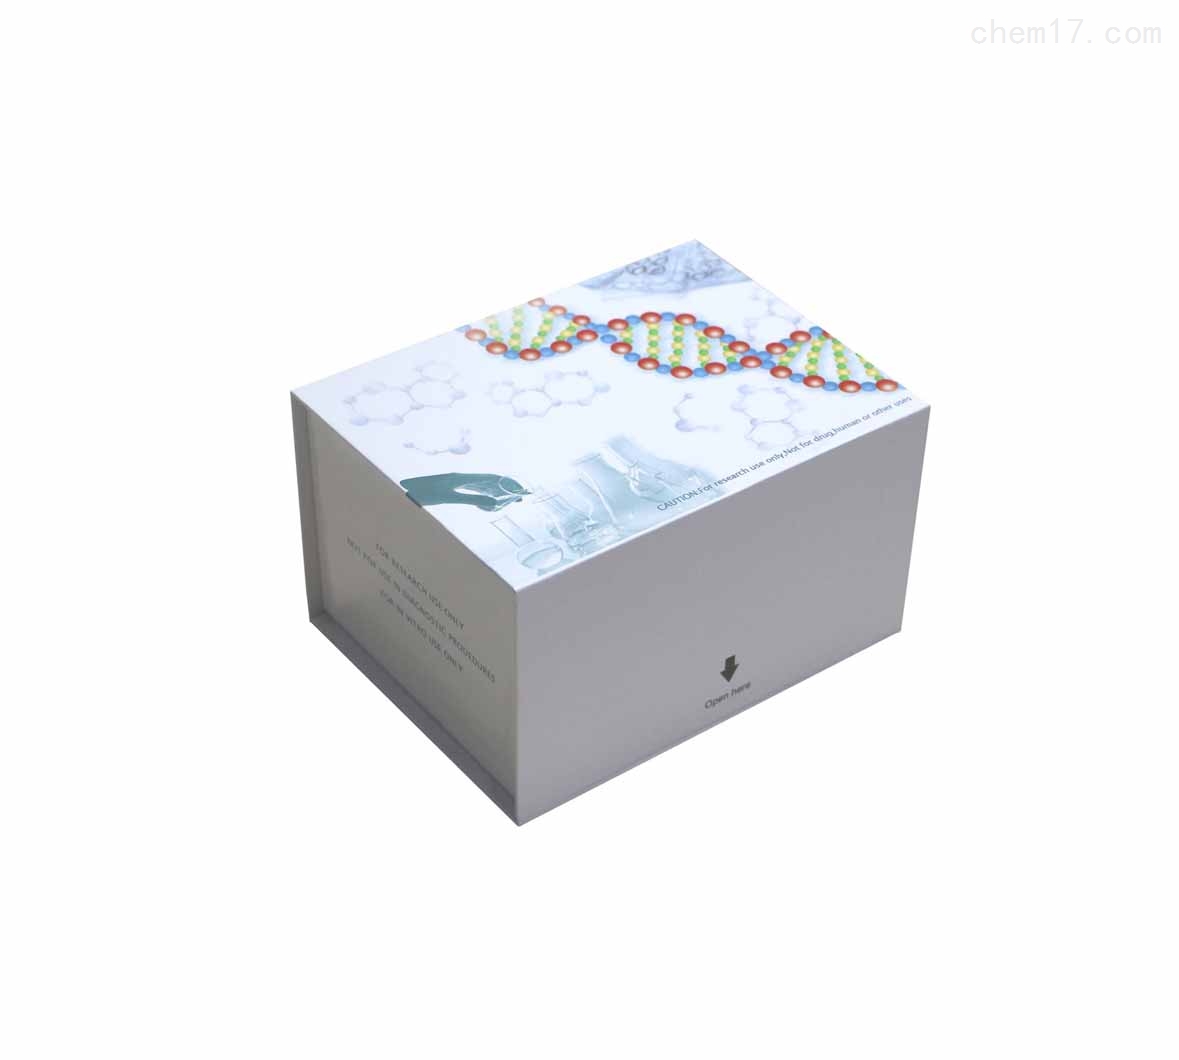 大鼠抗双链DNA抗体/天然DNA抗体(dsDNA)ELISA试剂盒质量保证